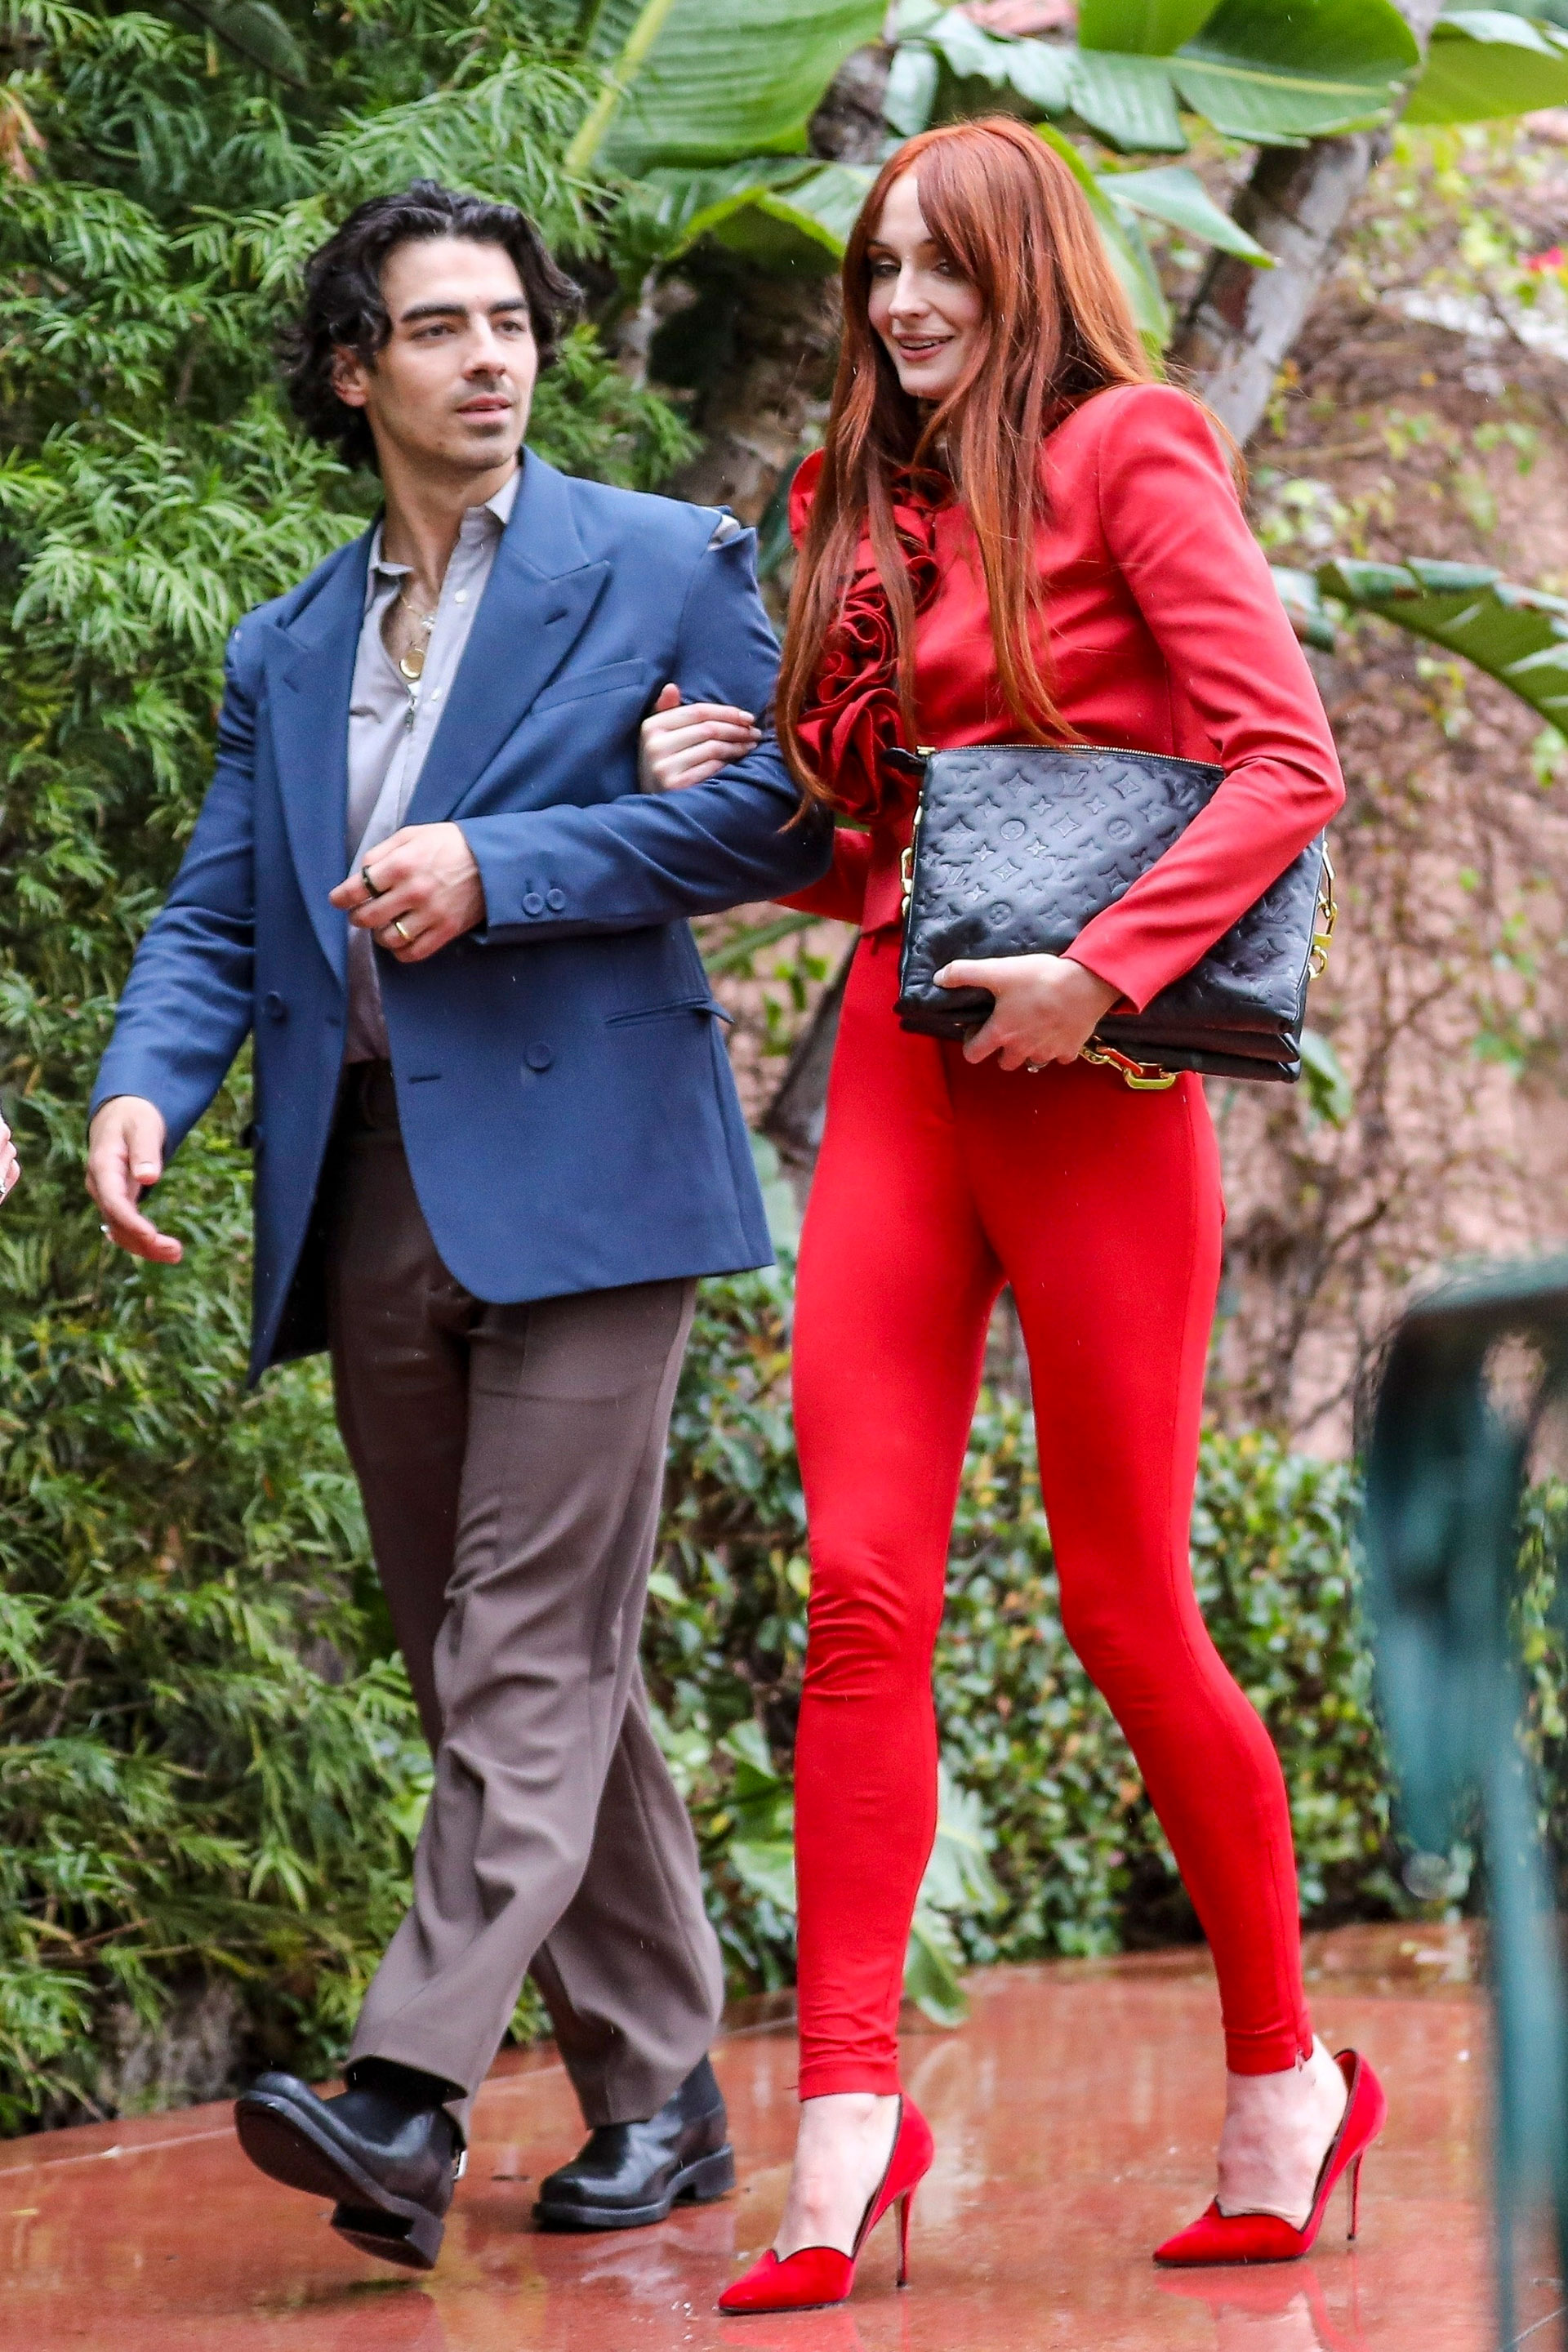 Sophie Turner deslumbró con su look luego de un show de Jonas Brothers en Hollywood: pantalón rojo que combinó con su camisa de satén y volados en su pecho. Estiletos del mismo color, y una cartera negra de cuero